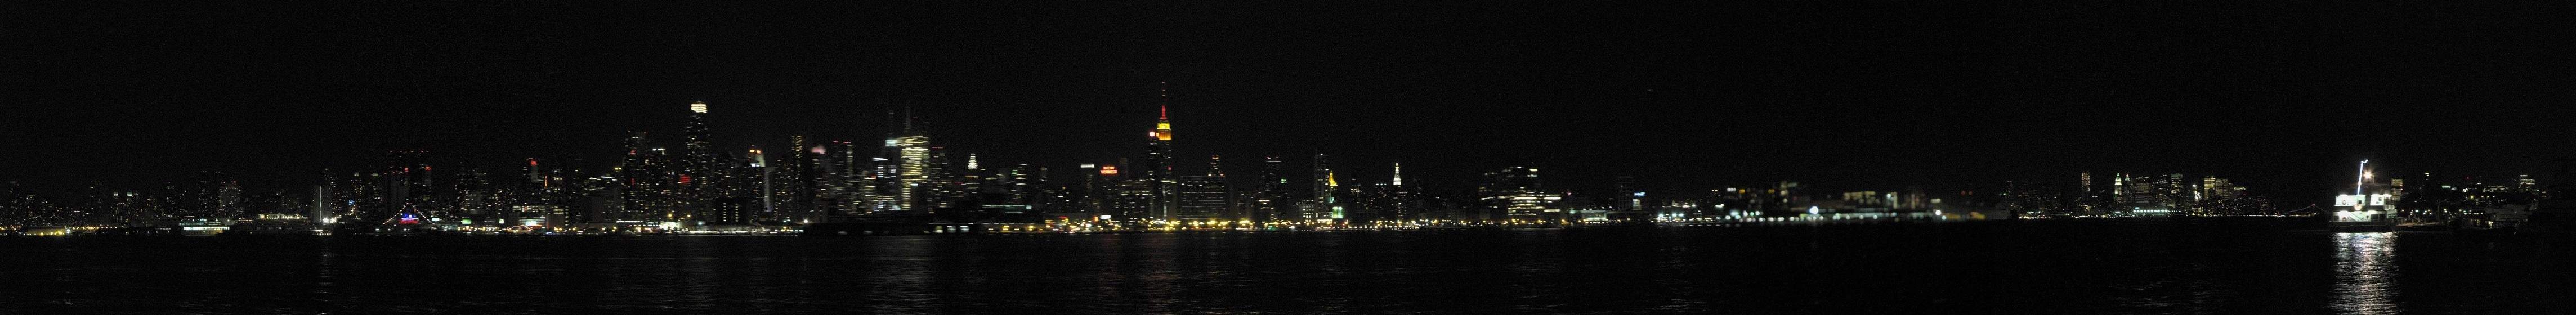 New York City Panorama at night